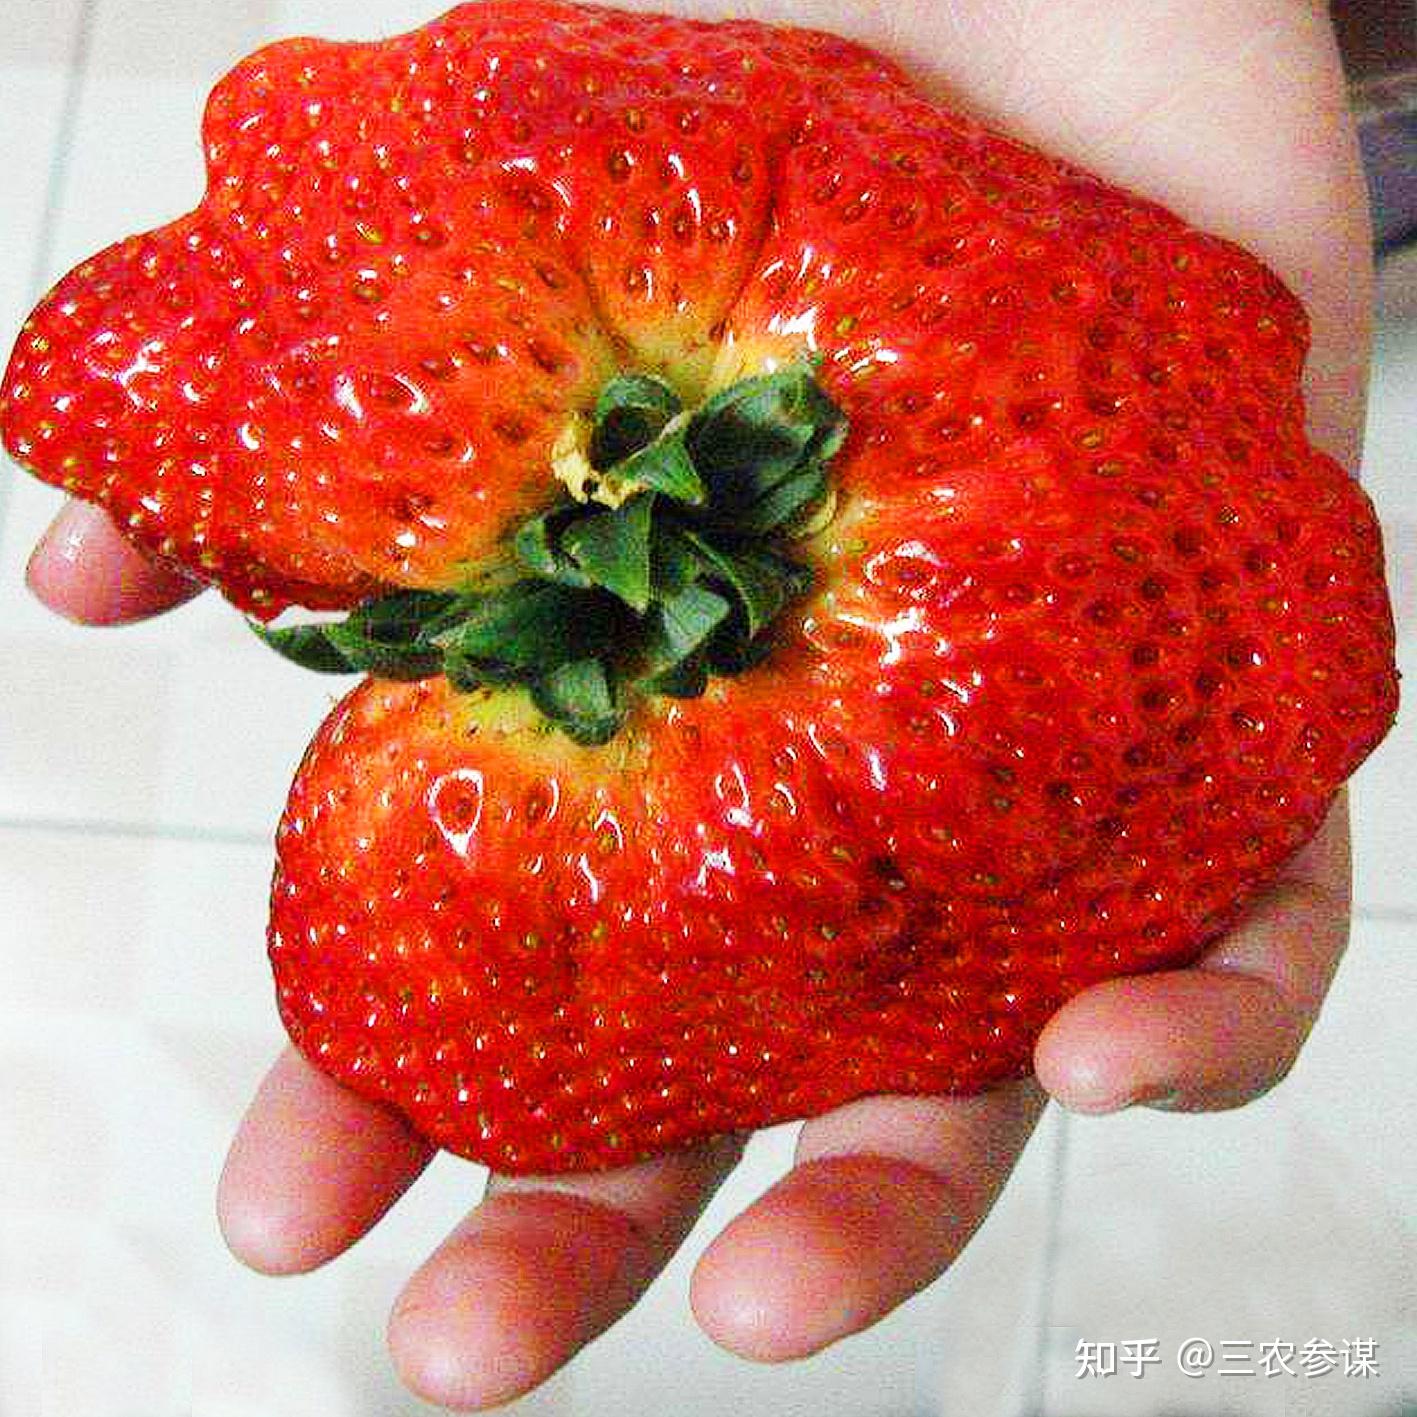 还有长这样的鸡冠状的奇形怪状,凹凸不平的可是在挑选和食用草莓的